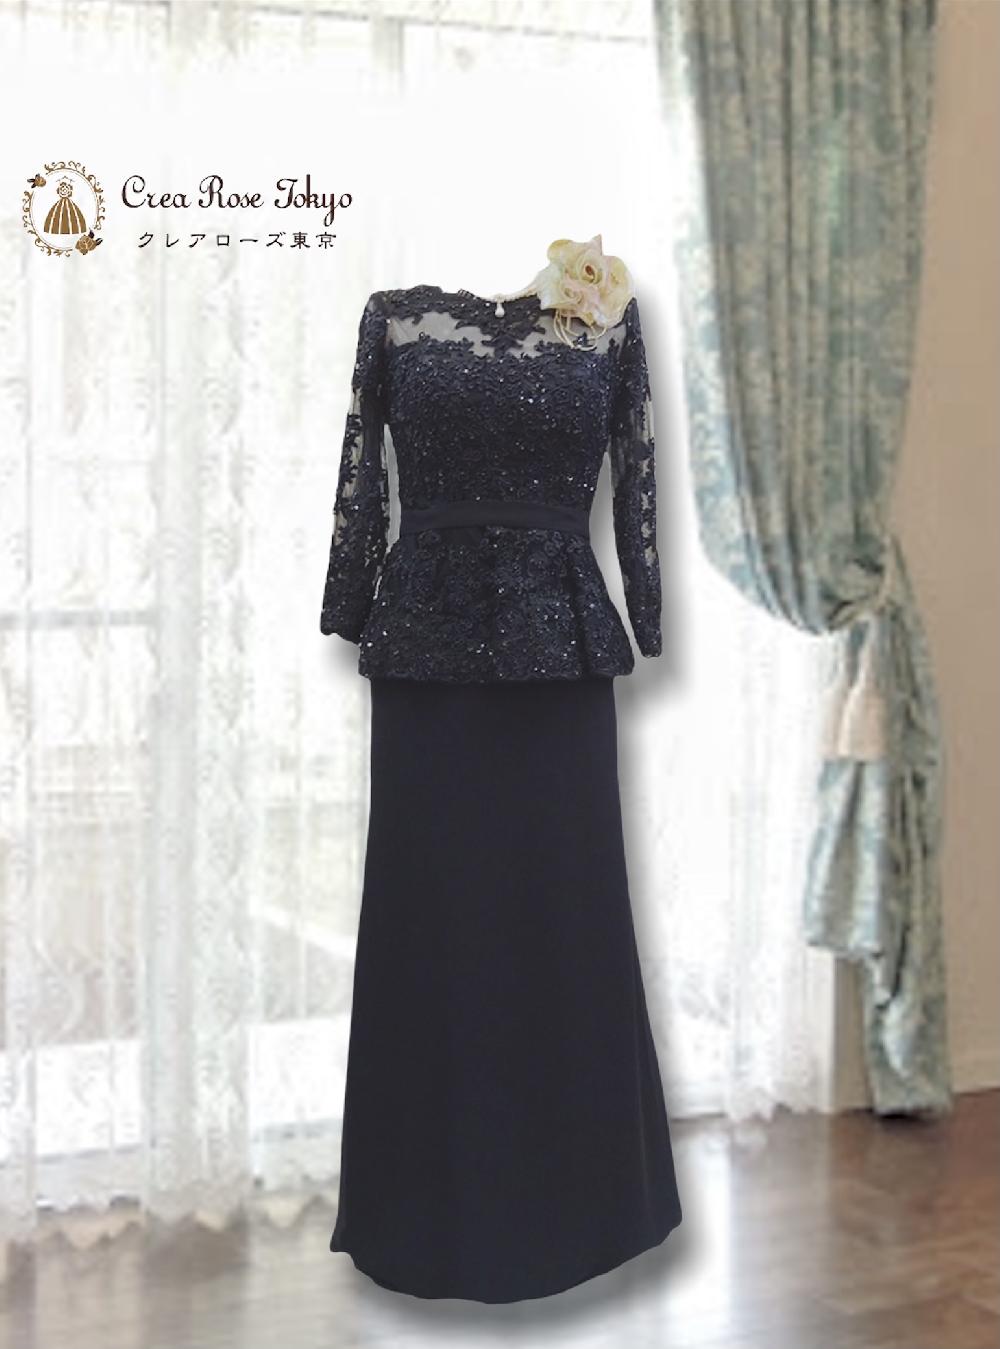 9号 【ヴェロニカ】ビーズが美しいブラックペプラムマザーズドレス 。上品な透け感で女性らしさを演出します。画像